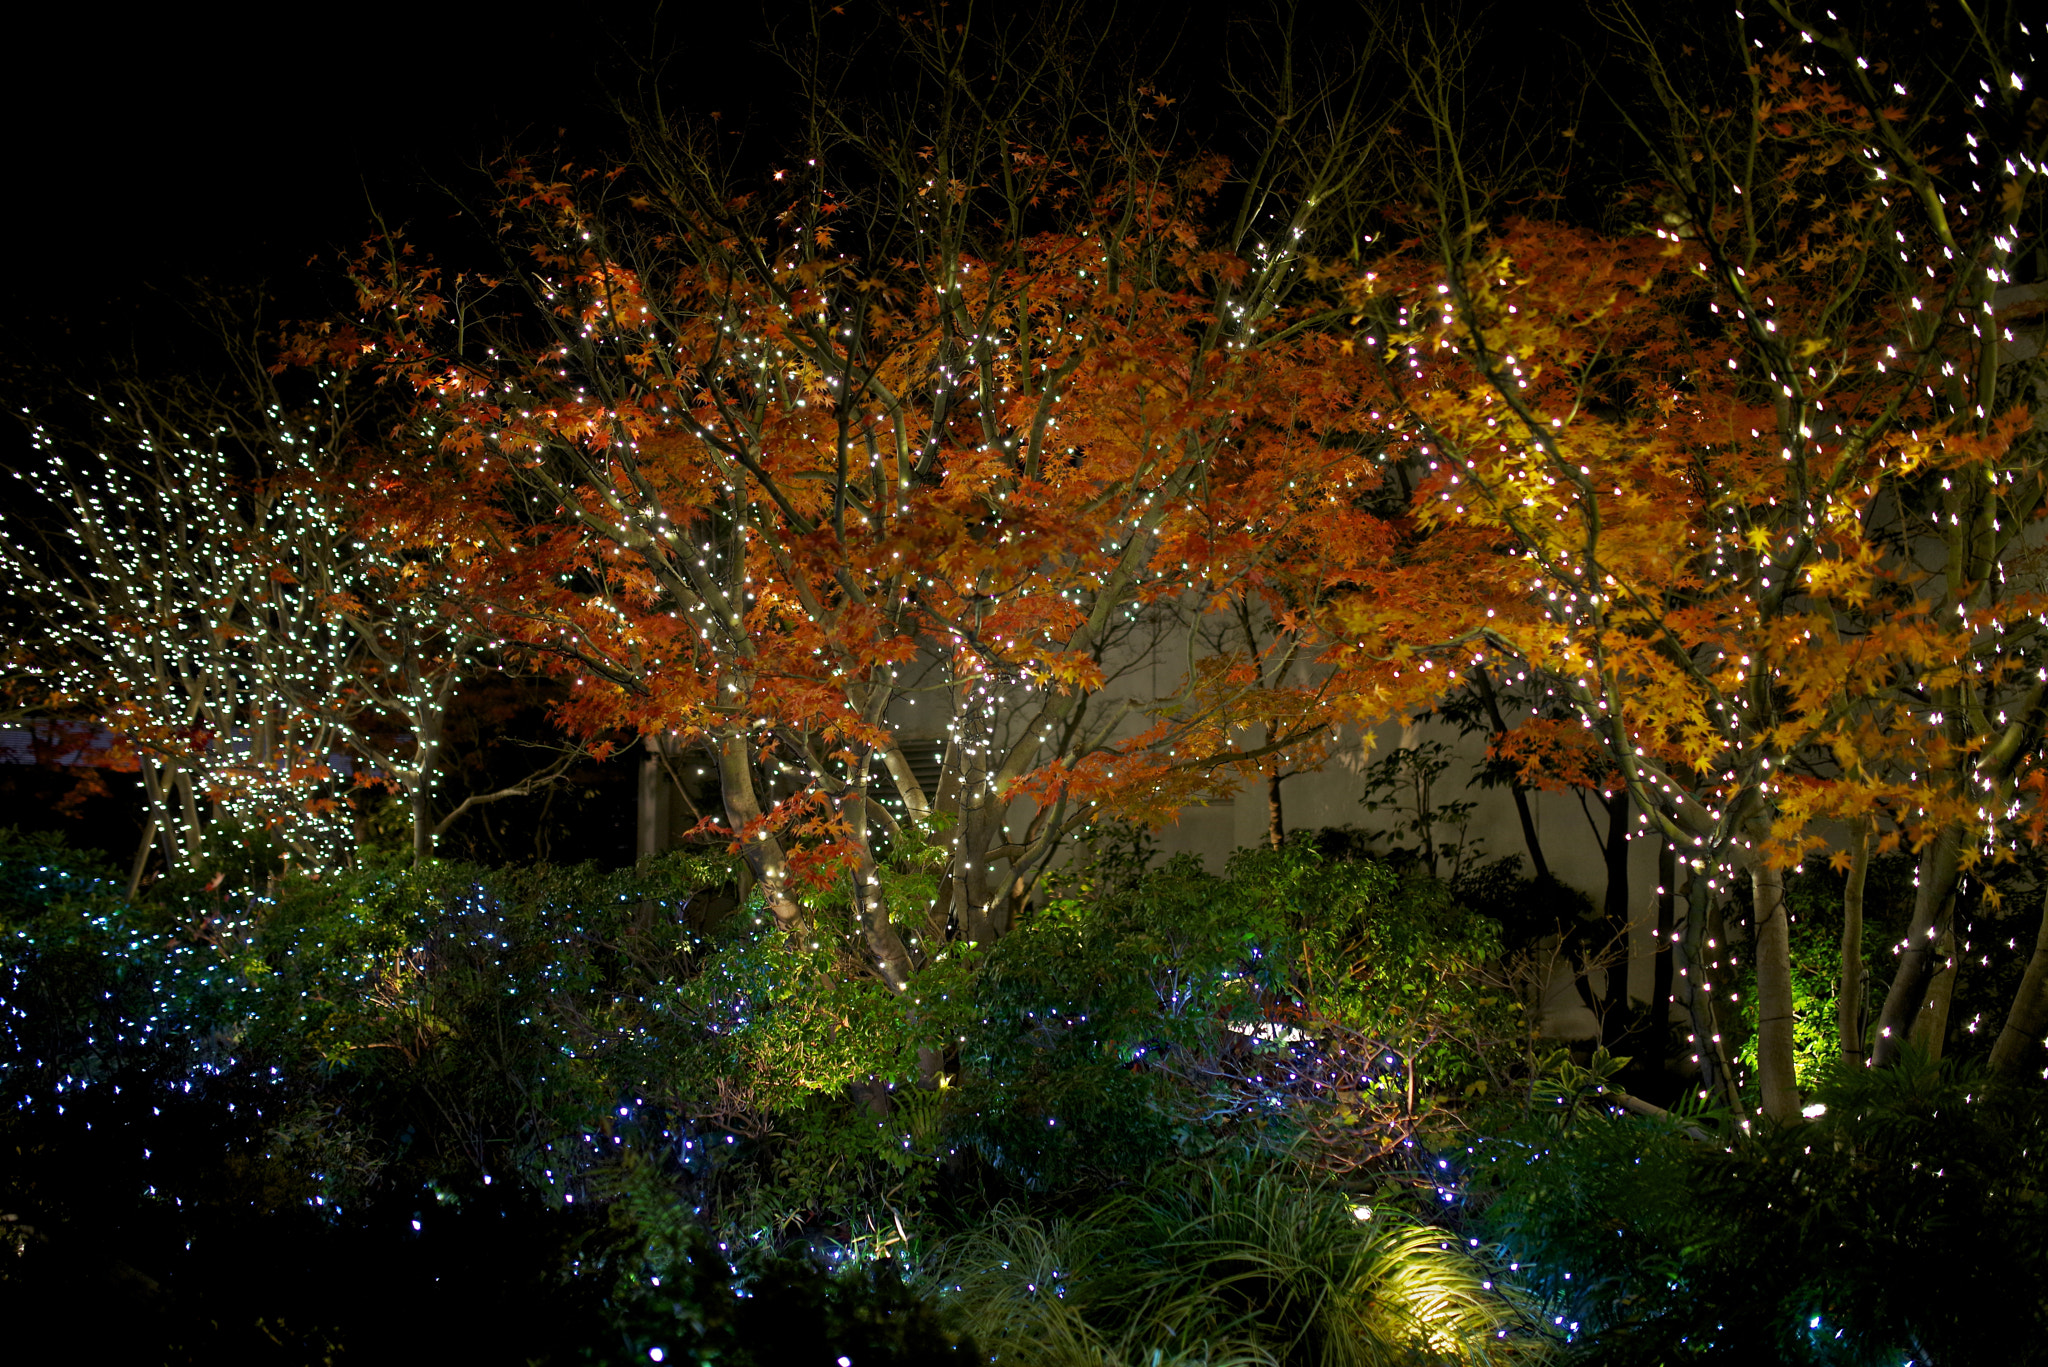 Pentax K-1 sample photo. Autumn illumination photography